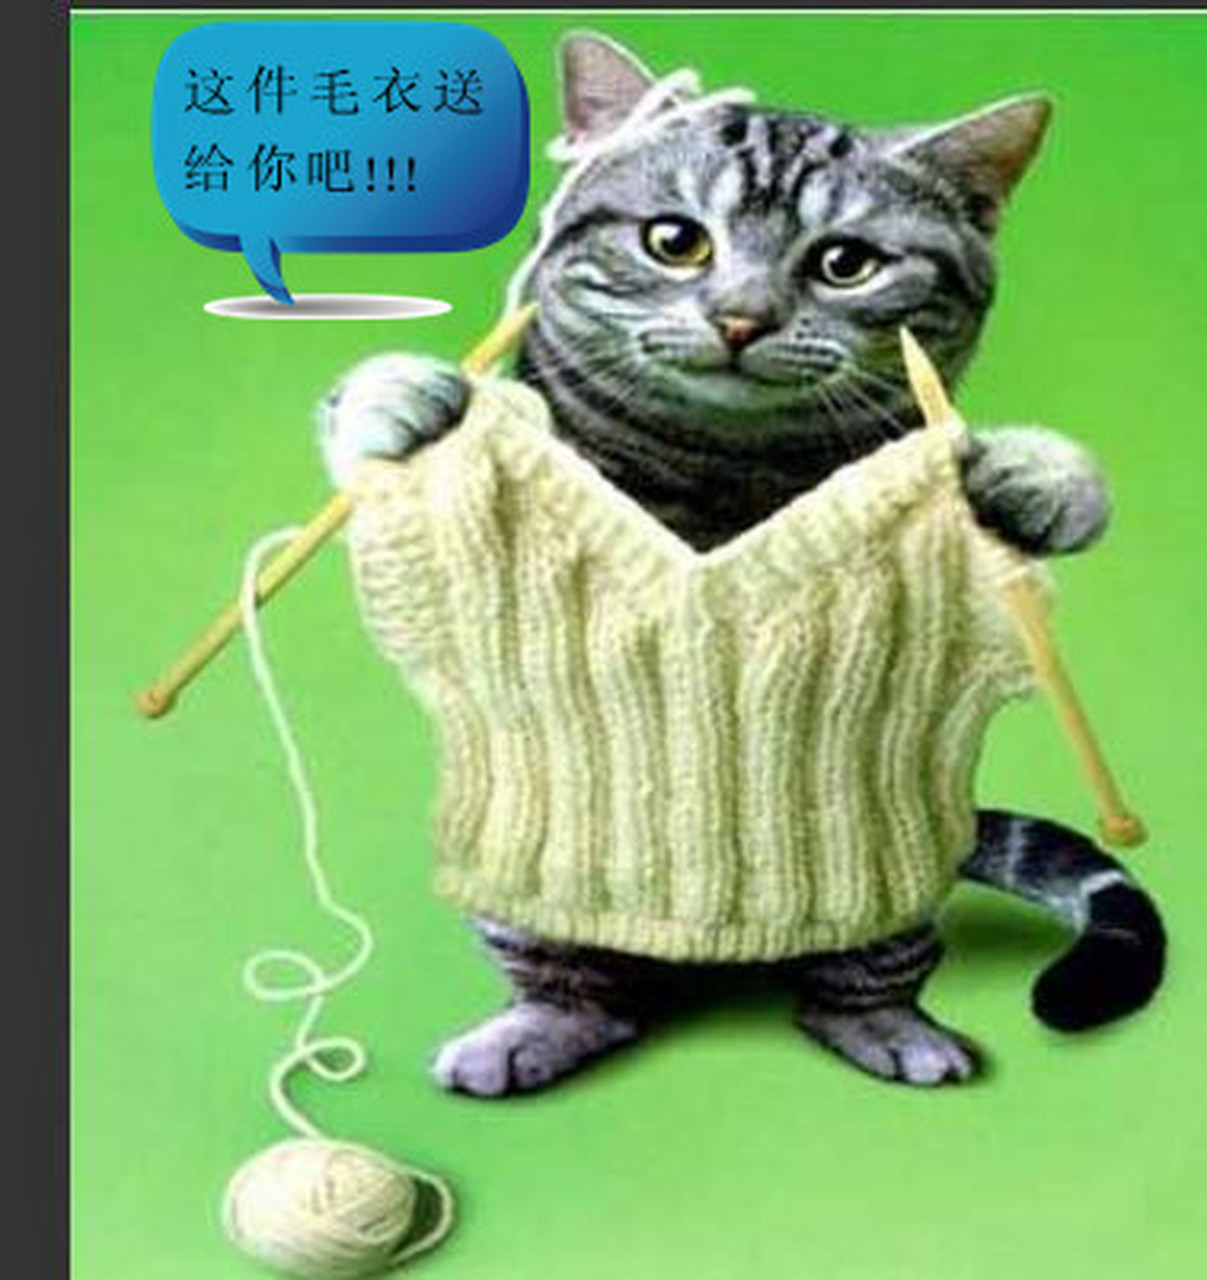 搞笑动物图片系列:织件毛衣送给你#搞笑#动态贡献者奖励计划